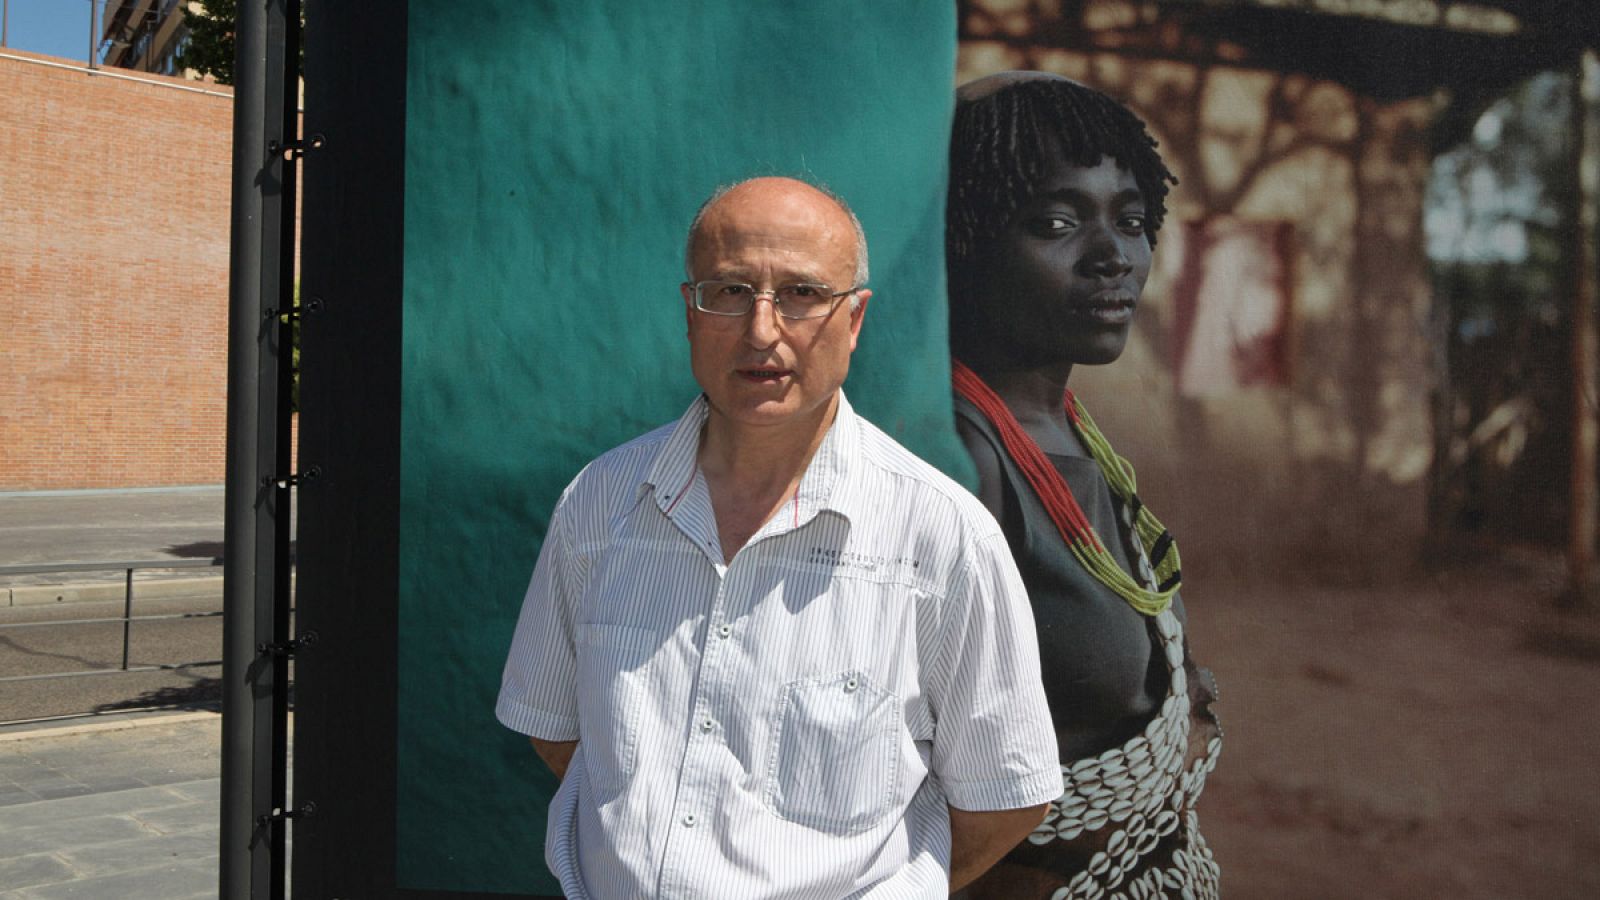 El fotógrafo Juan Manuel Castro Prieto, delante de una de sus fotografías de la exposición 'Etiopía' en Alcobendas.